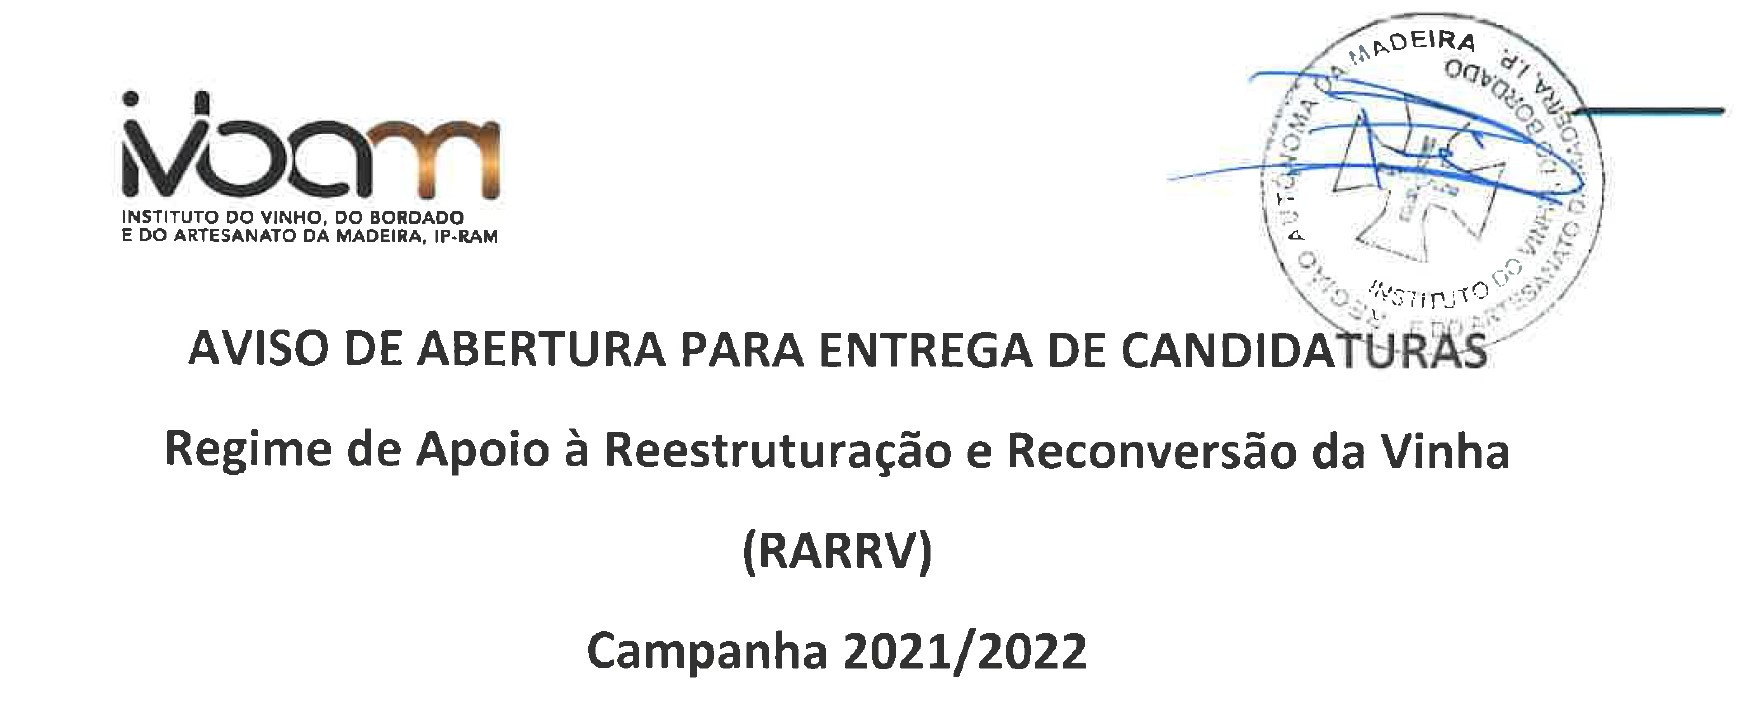 CANDIDATURAS REGIME DE APOIO À REESTRUTURAÇÃO E RECONVERSÃO DA VINHA CAMPANHA 2021/2022